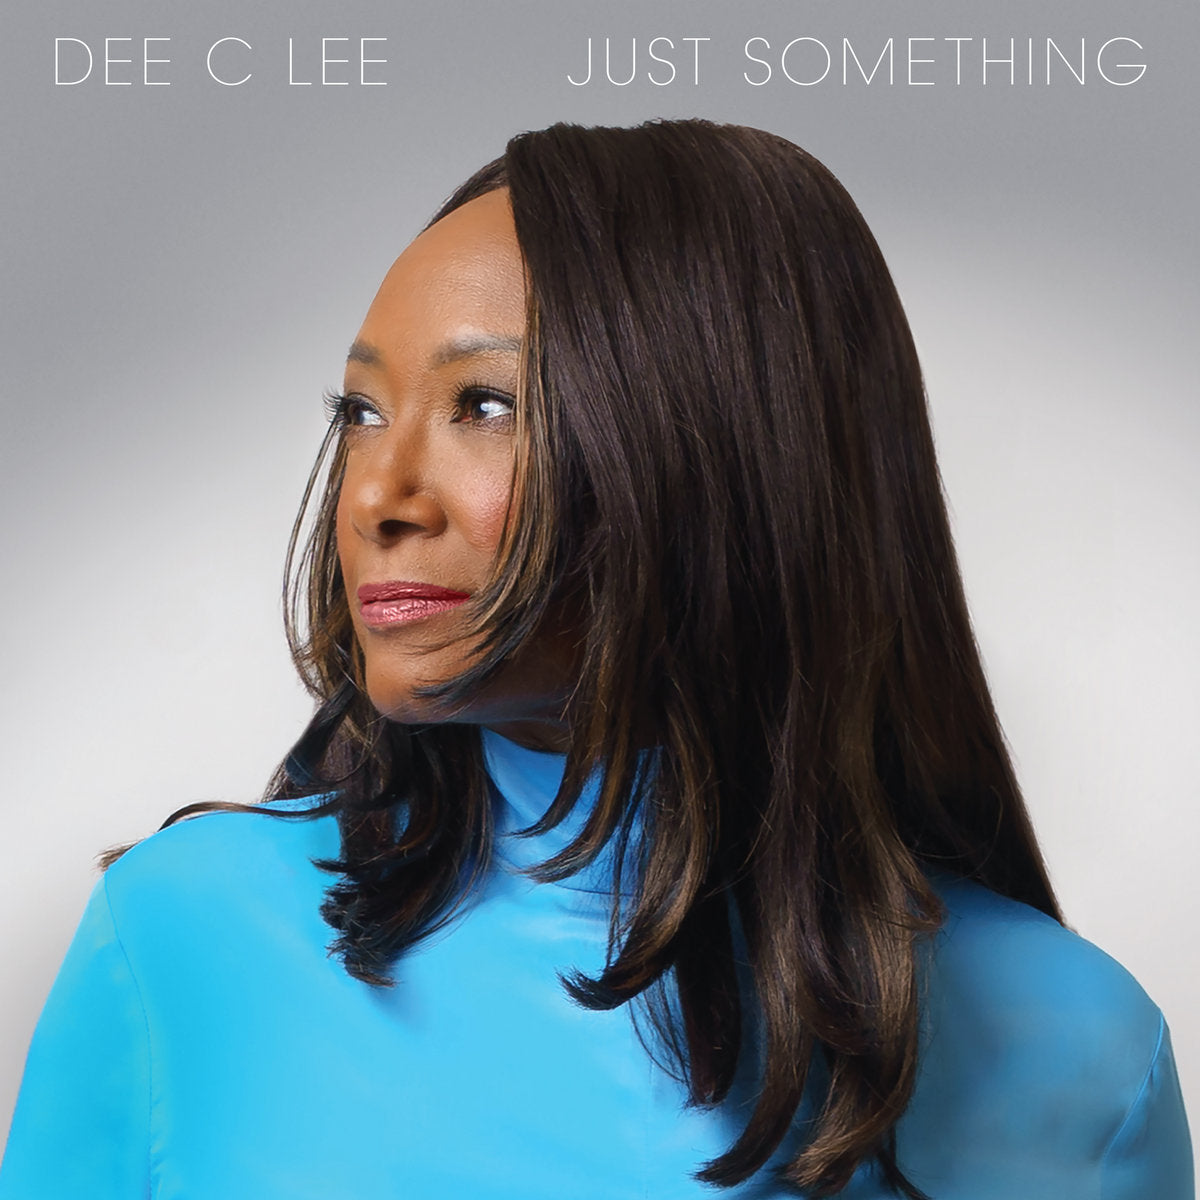 Dee C Lee - Just Something: CD